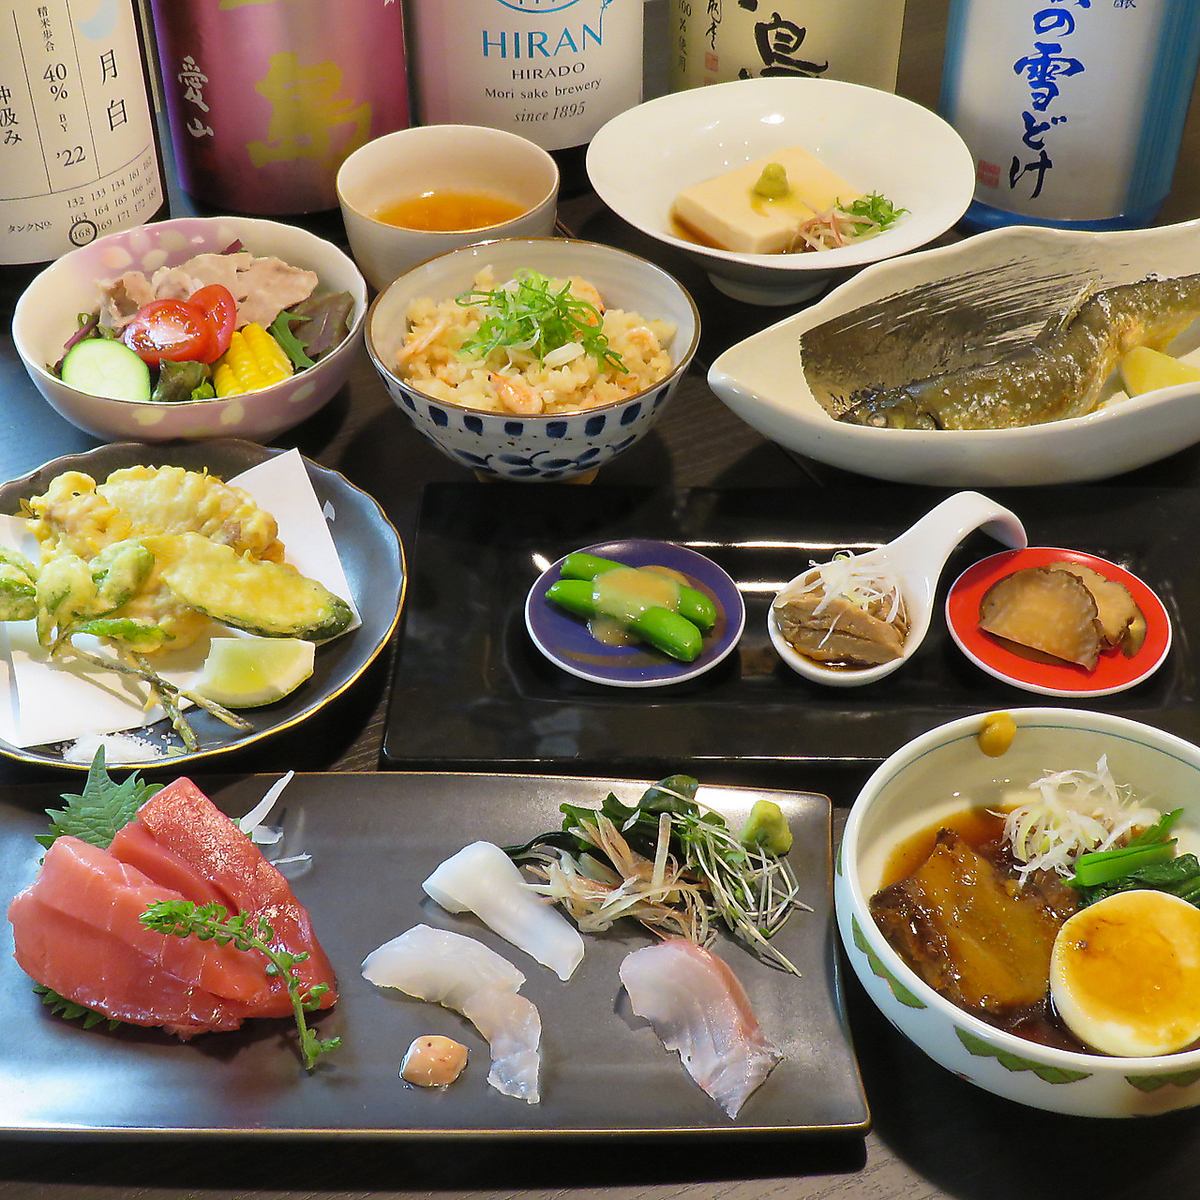 即使是美食家也能對我們的特色菜餚和稀有的日本酒感到滿意。